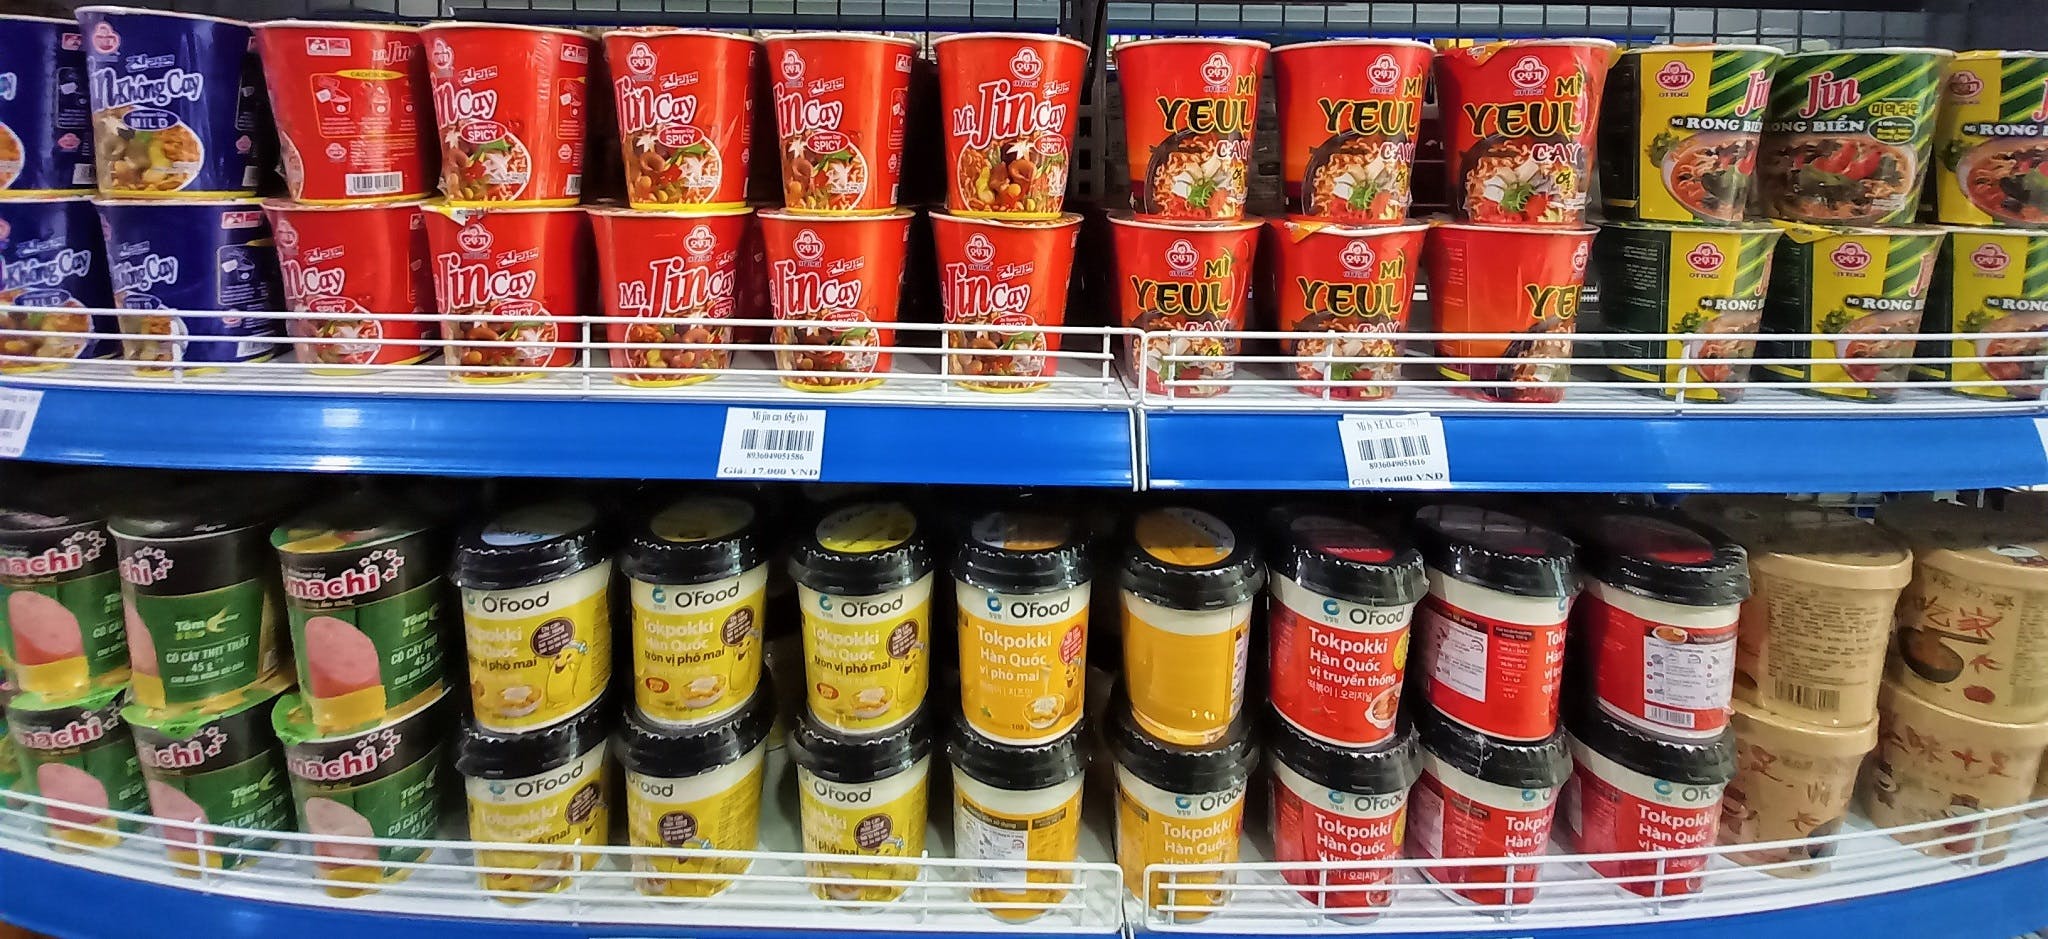 Instant Pot Noodles in Vietnam